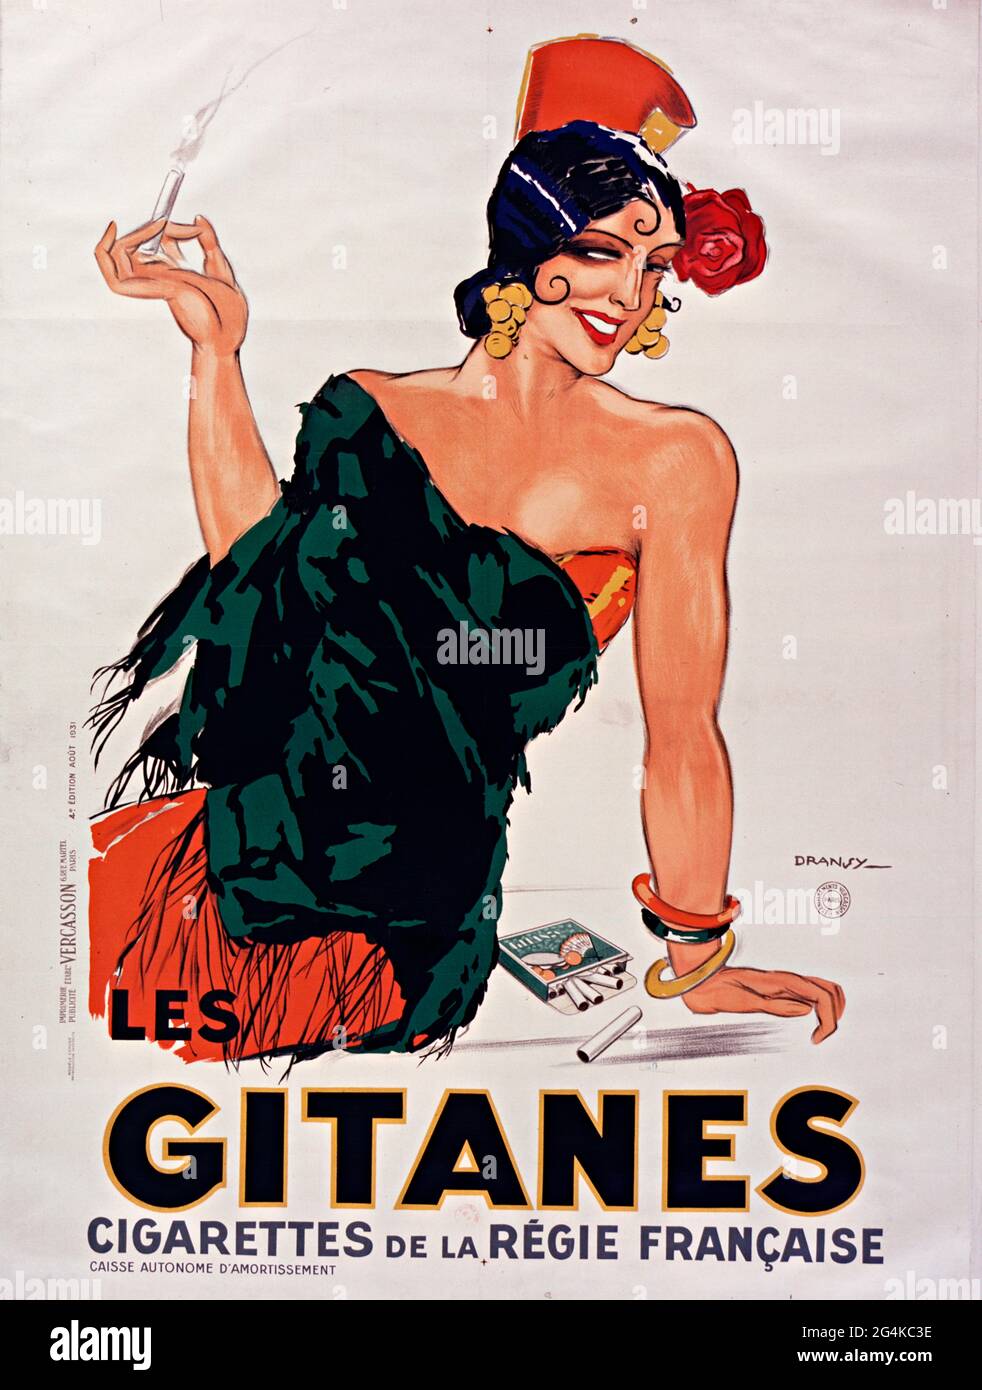 Cigarettes Gitanes, 1931. Private Collection. Stock Photo